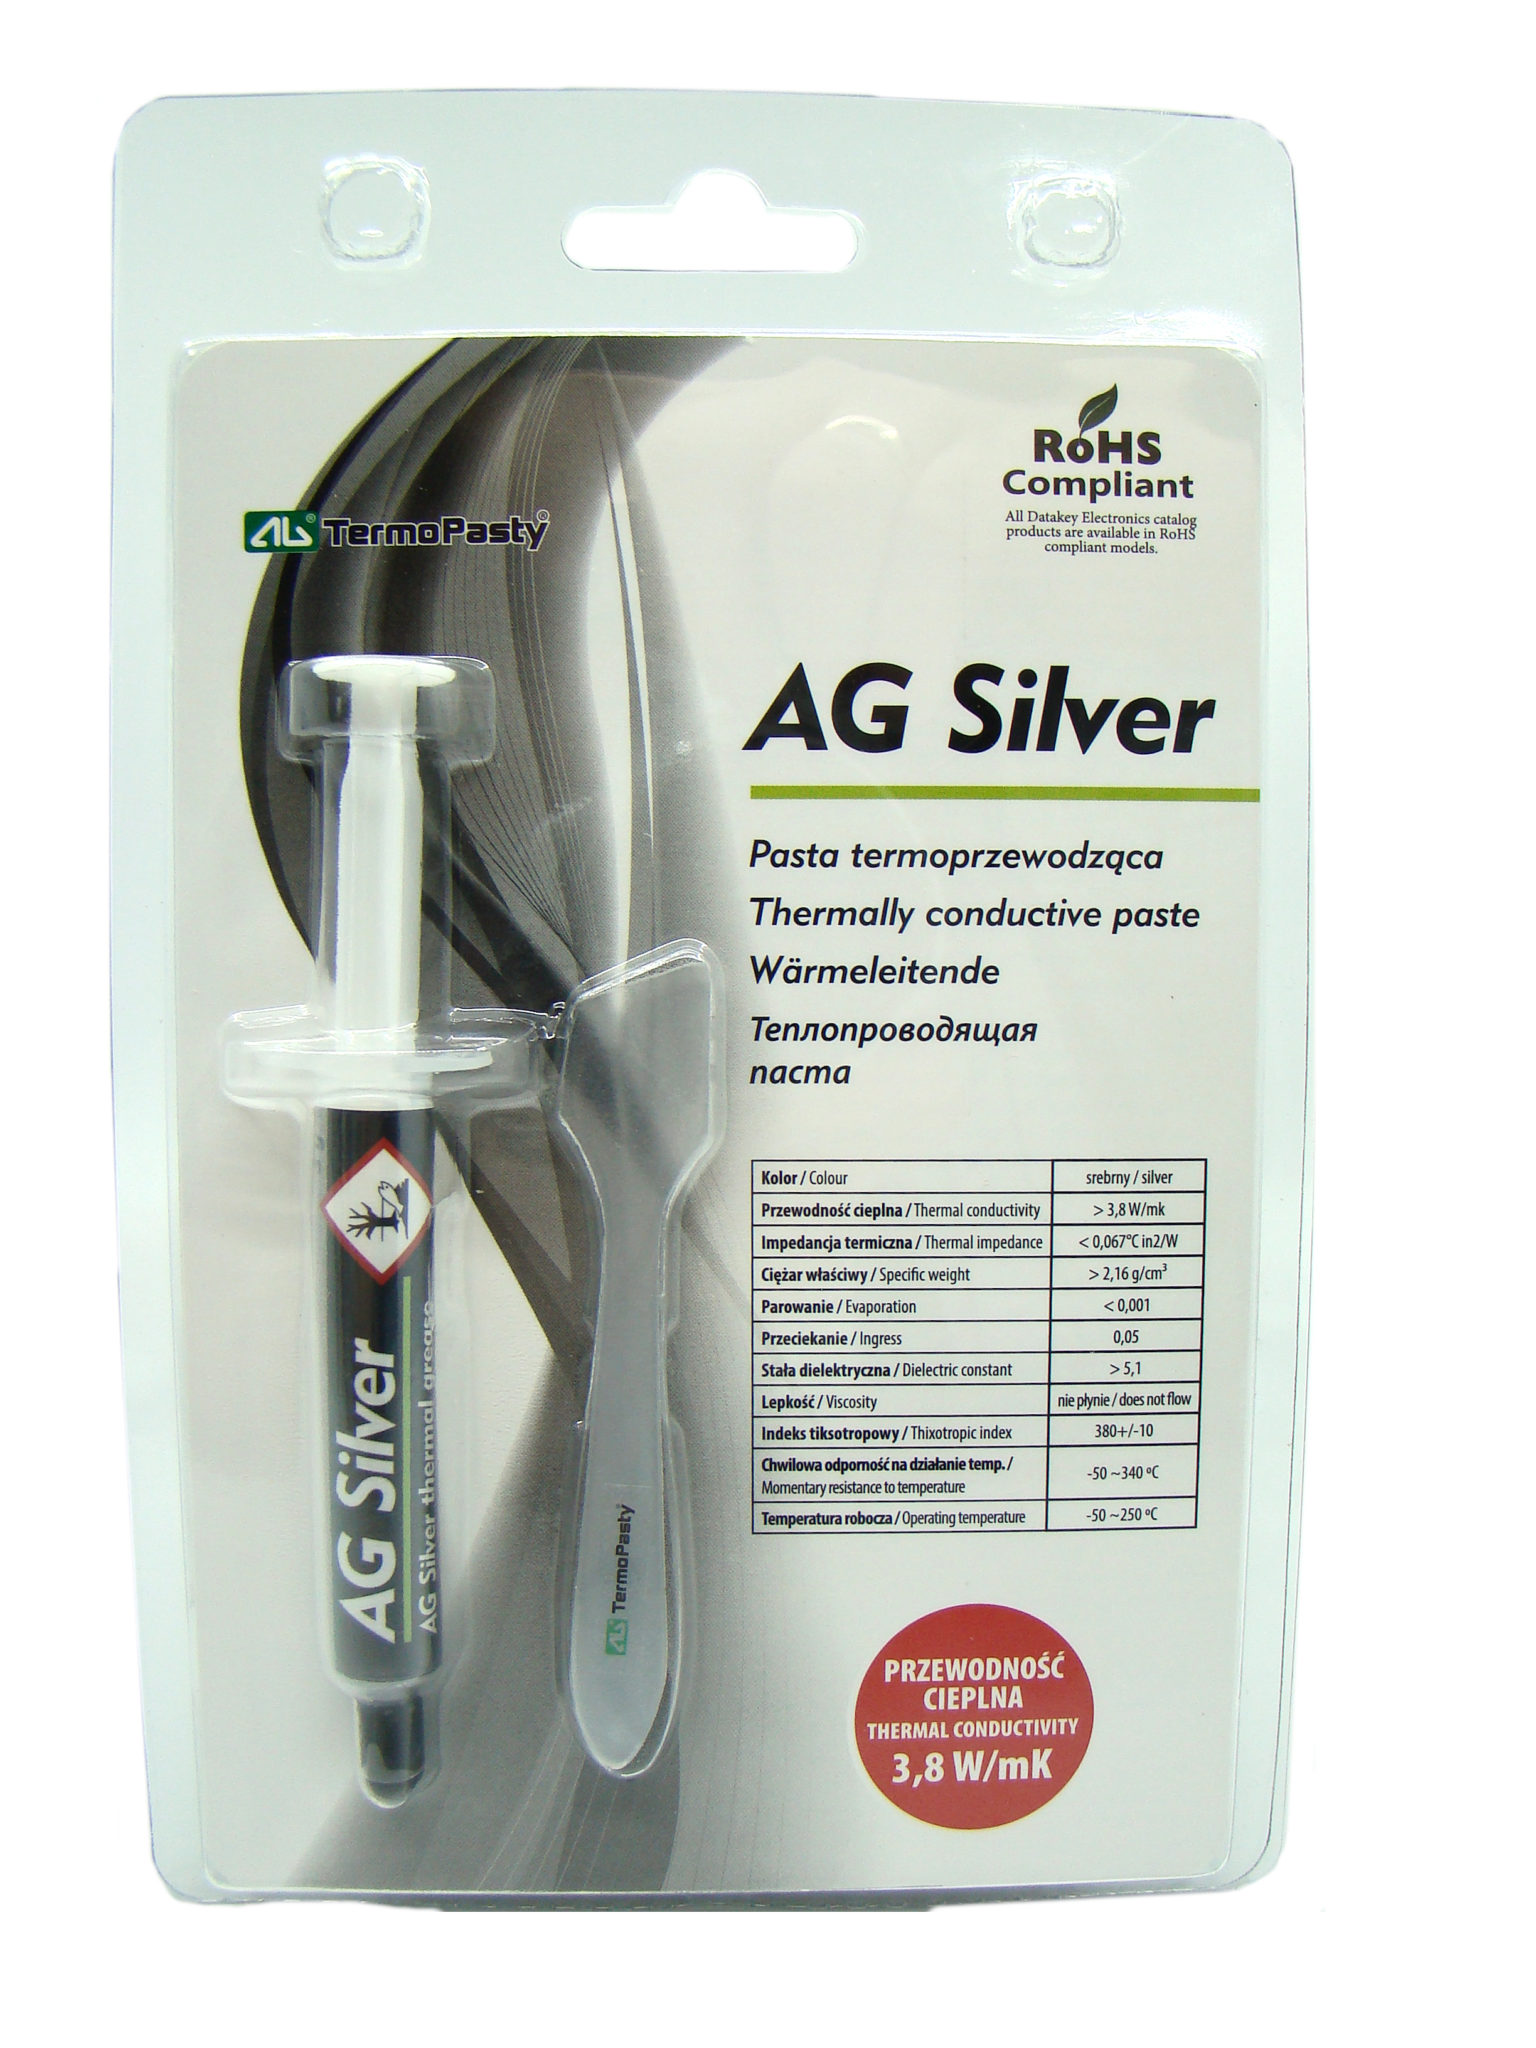 Strzykawka AG Silver o pojemności 3g – pasta termoprzewodząca z dodatkiem srebra.